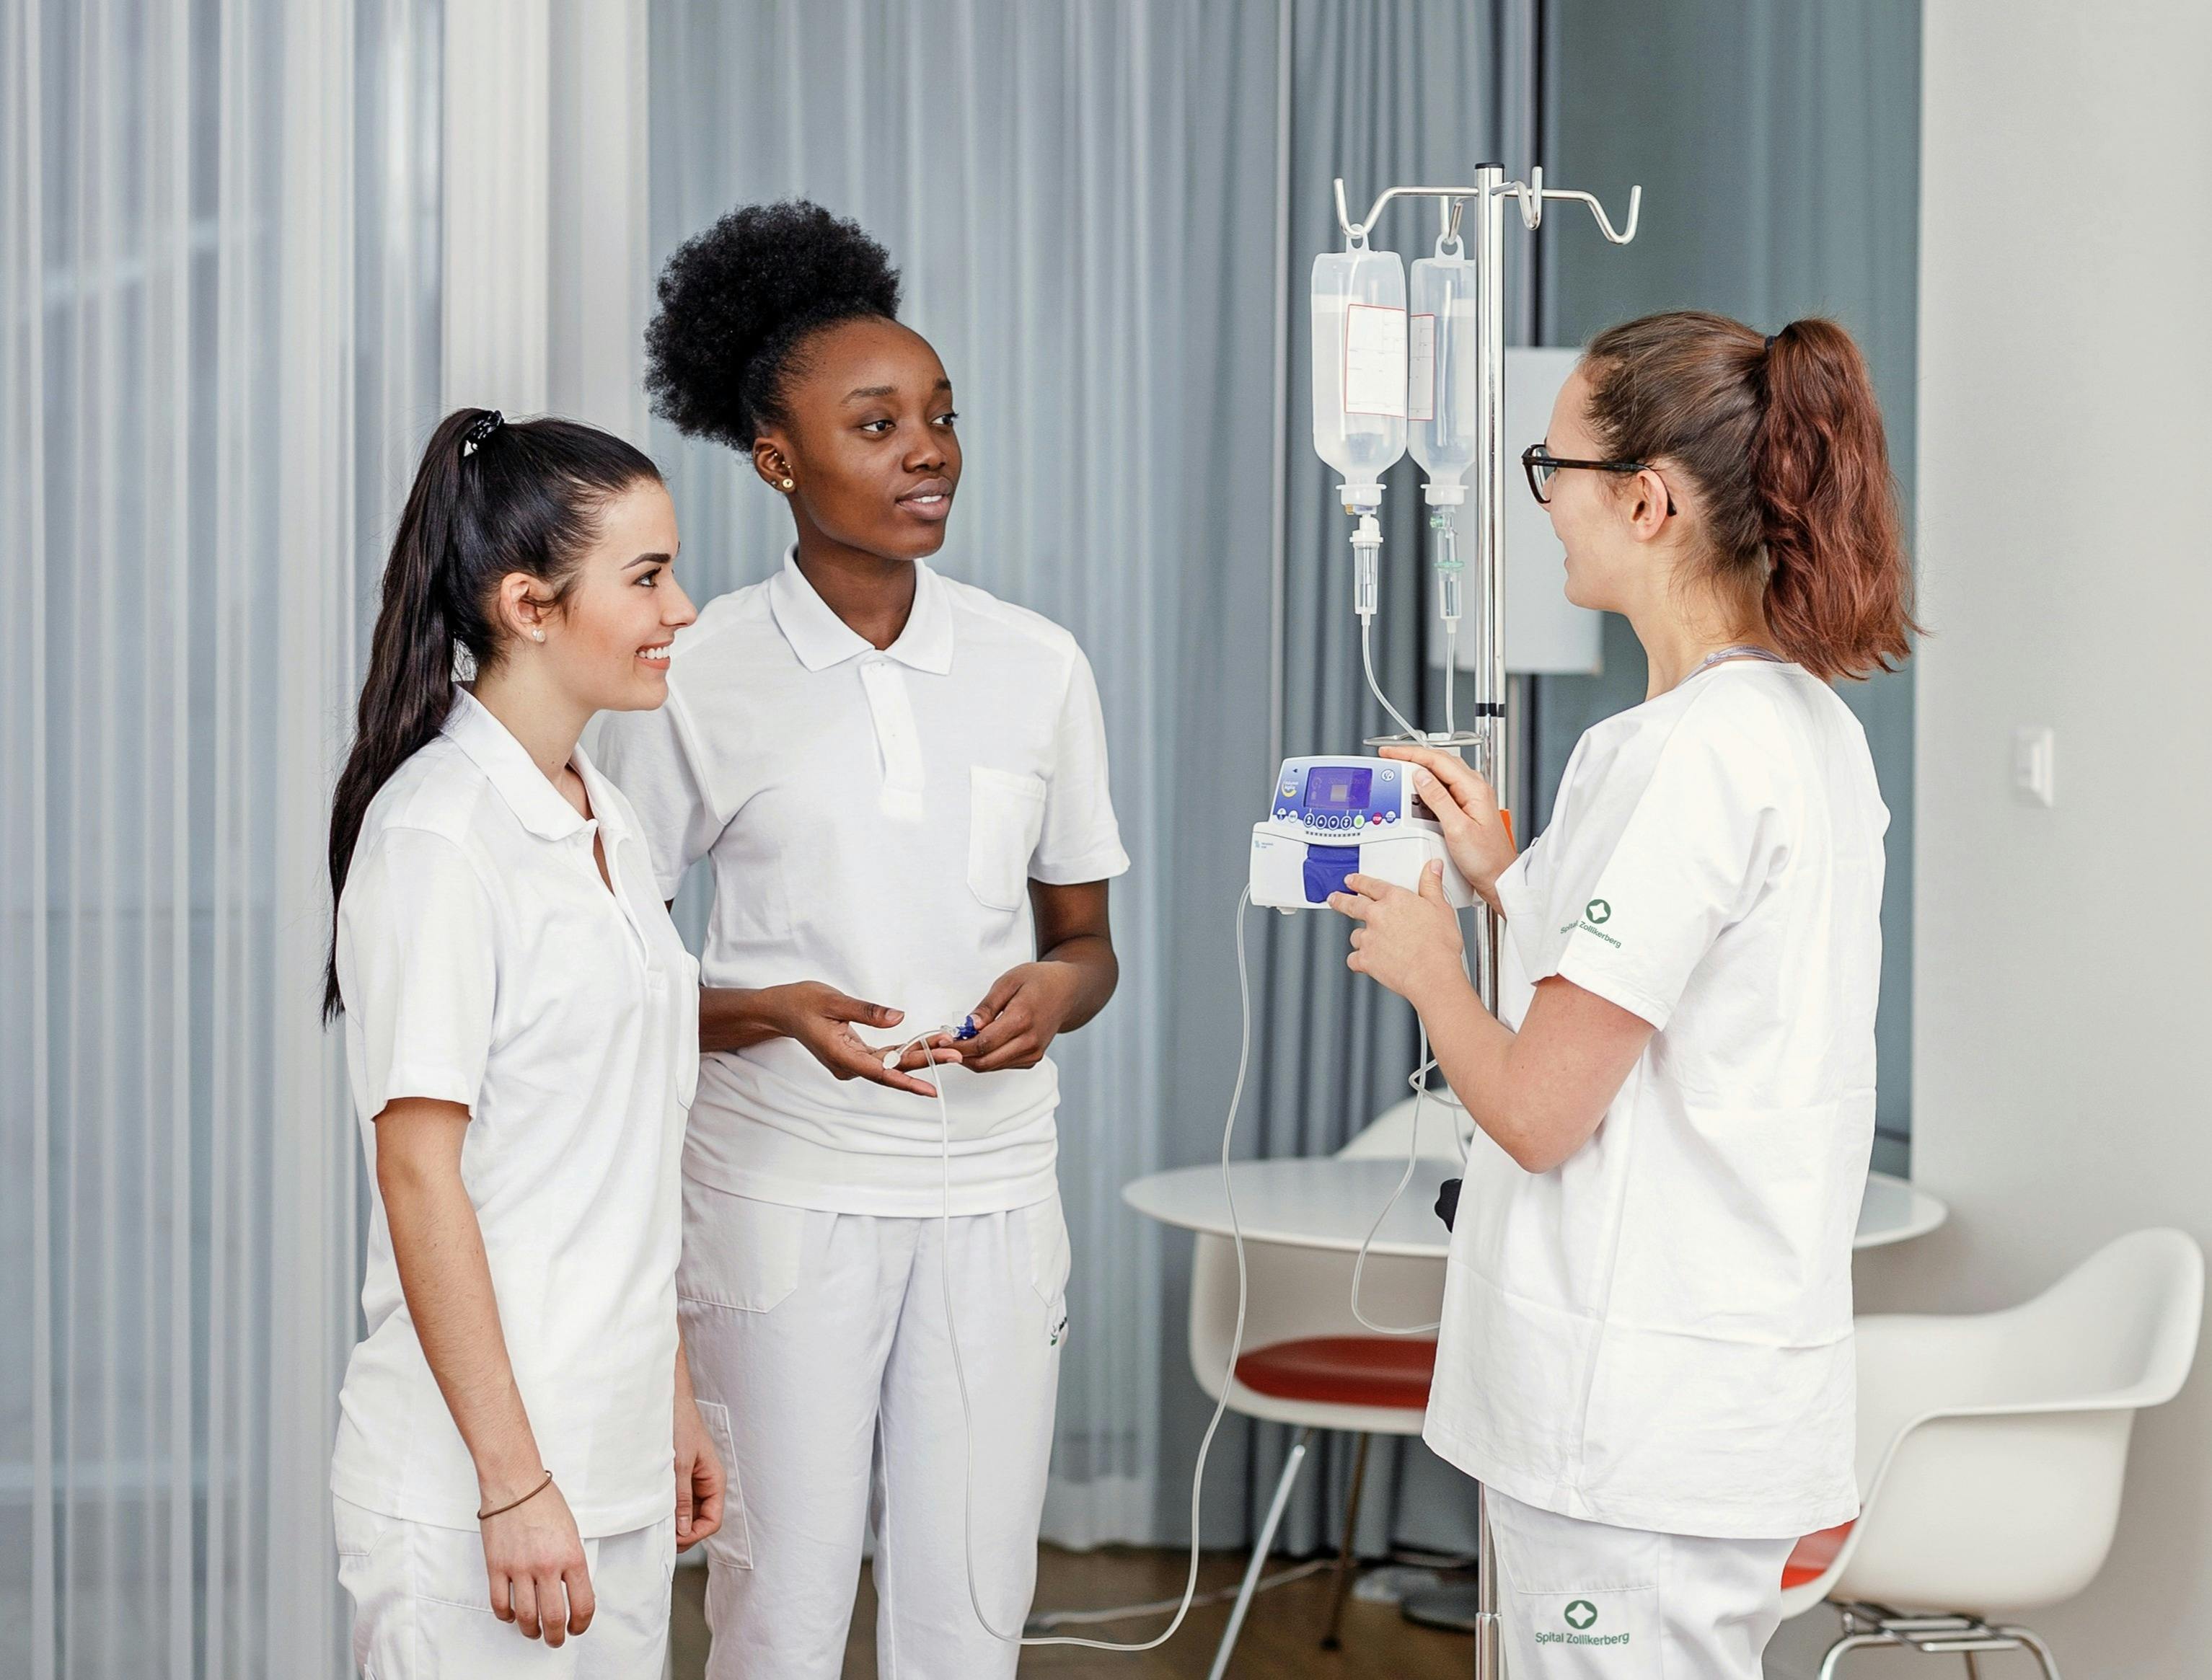 Drei Krankenpflegerinnen in weisser Berufskleidung unterhalten sich in einem Krankenhauszimmer.